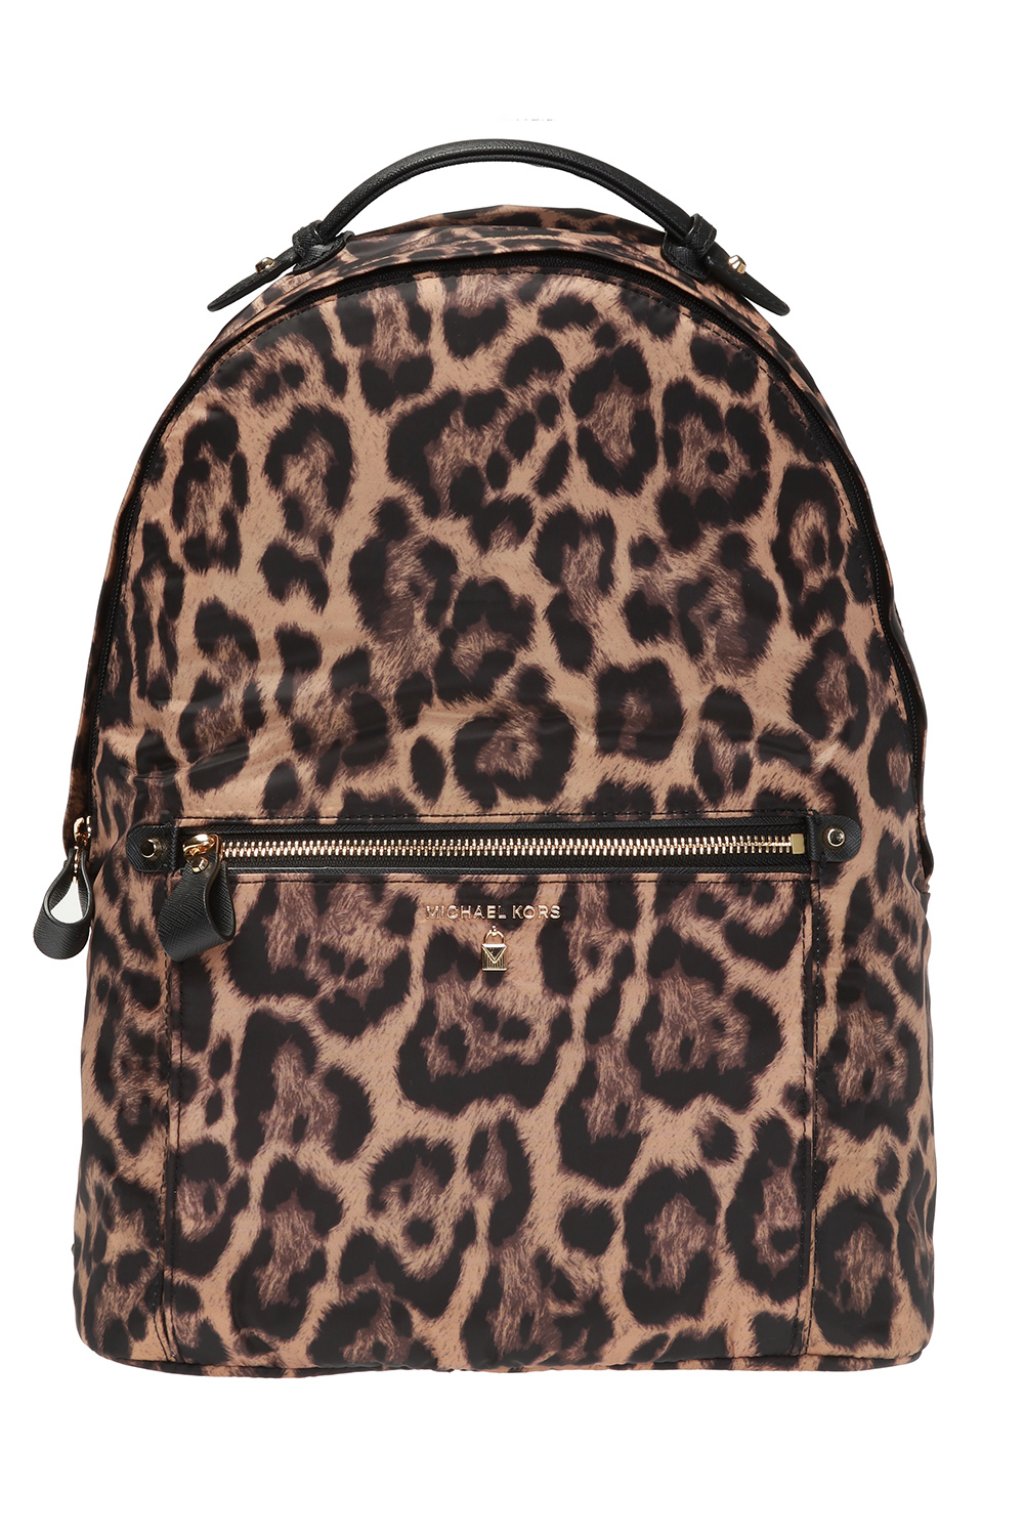 michael kors cheetah backpack